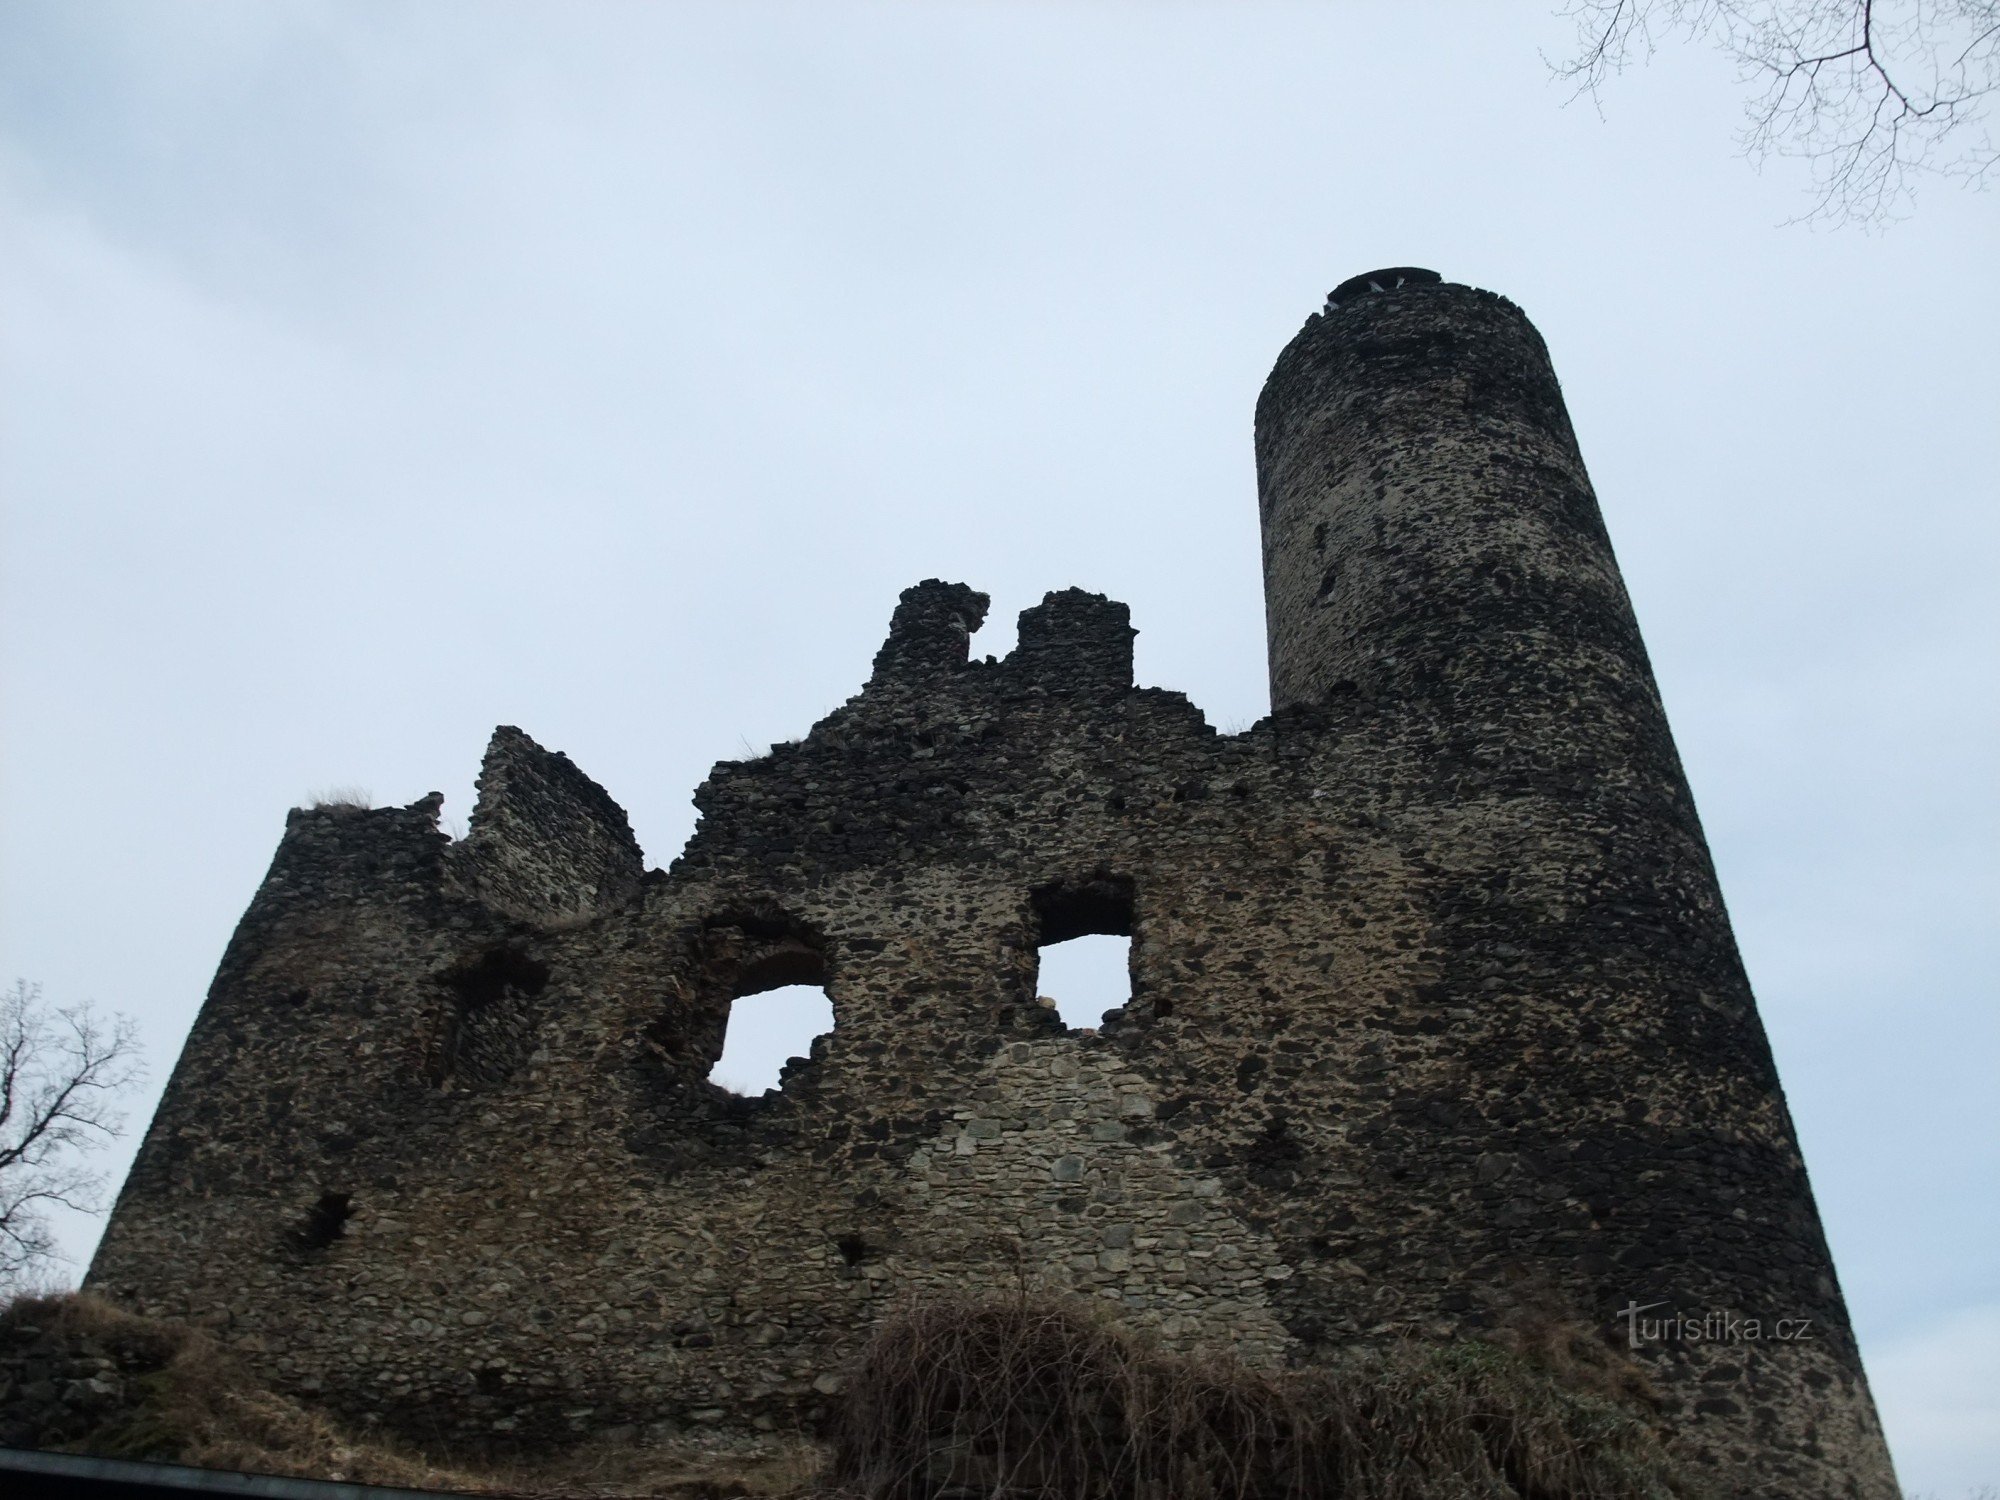 Det bevarade slottet Kostomlaty under Milešovka